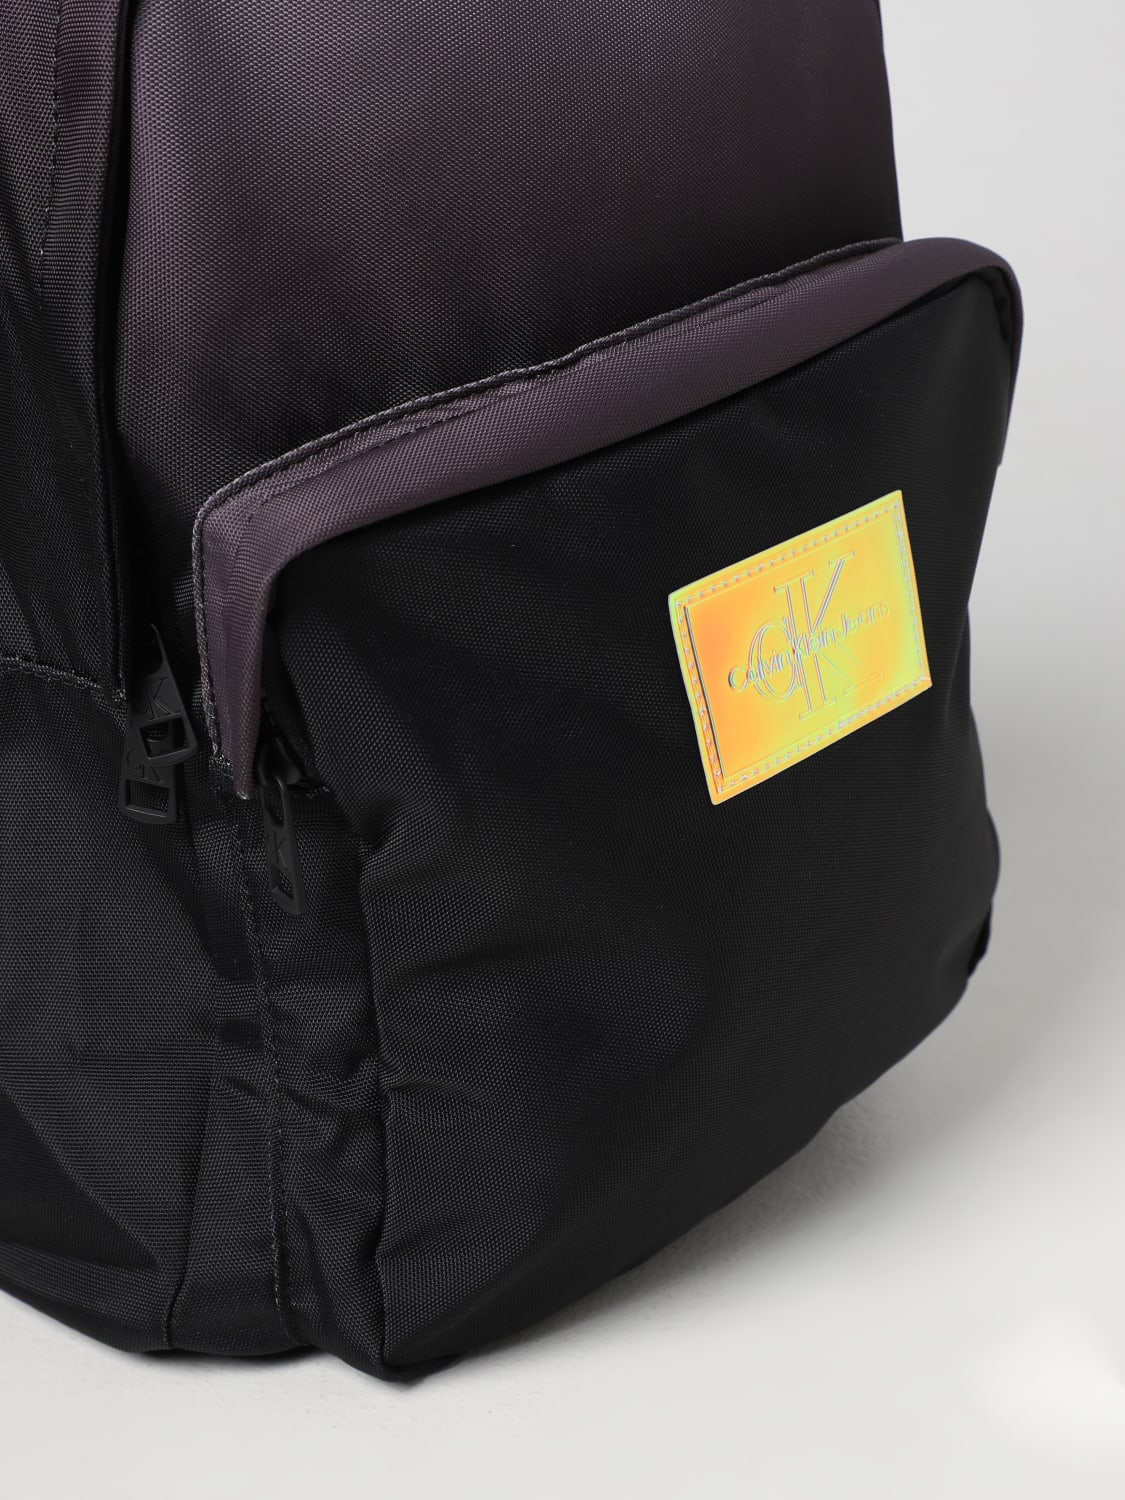 CALVIN KLEIN JEANS: degradè recycled nylon backpack - Black